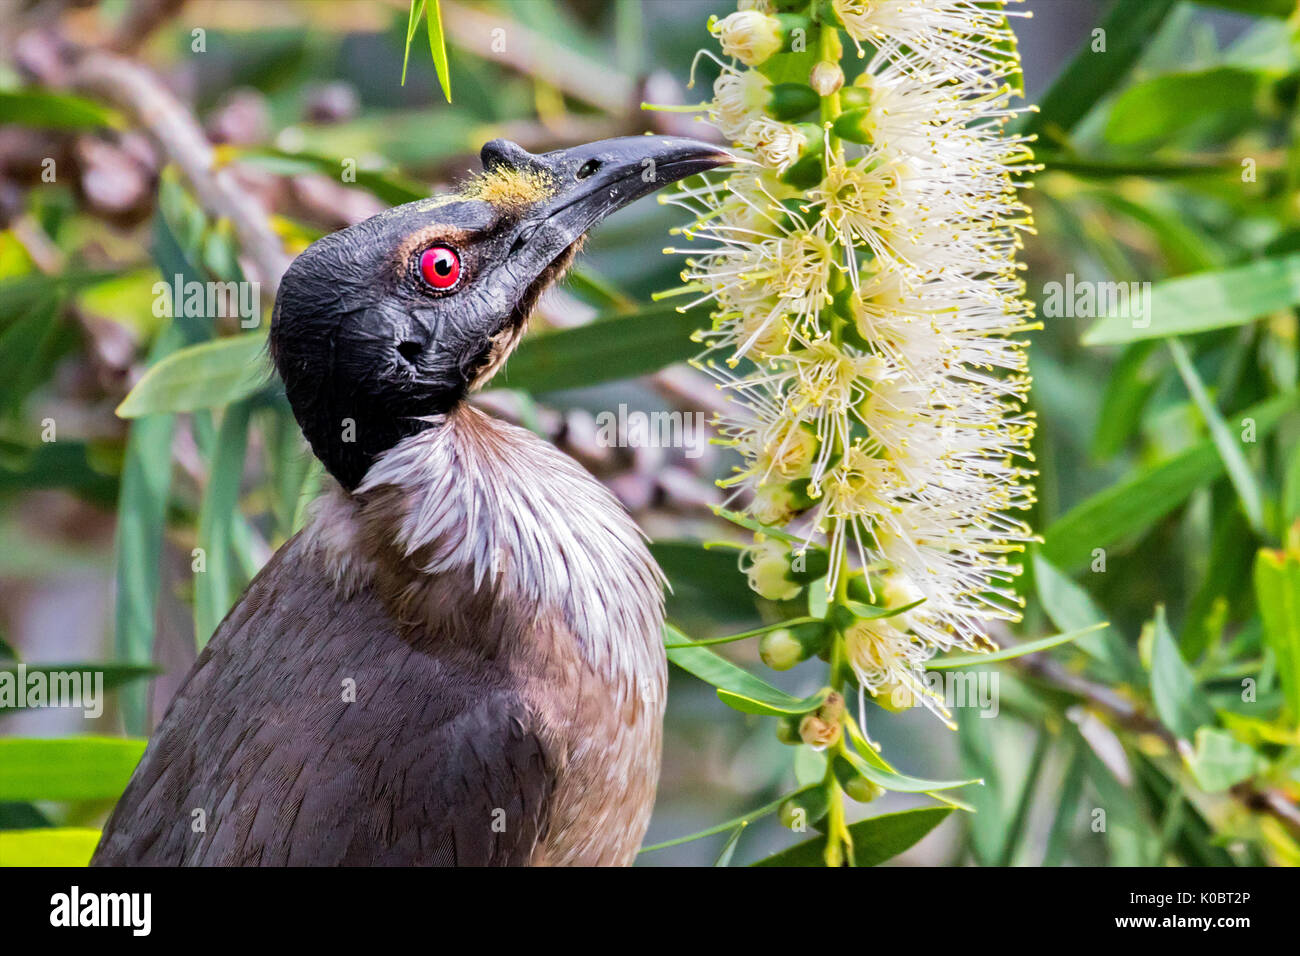 Noisy friarbird feeding on nectar Stock Photo